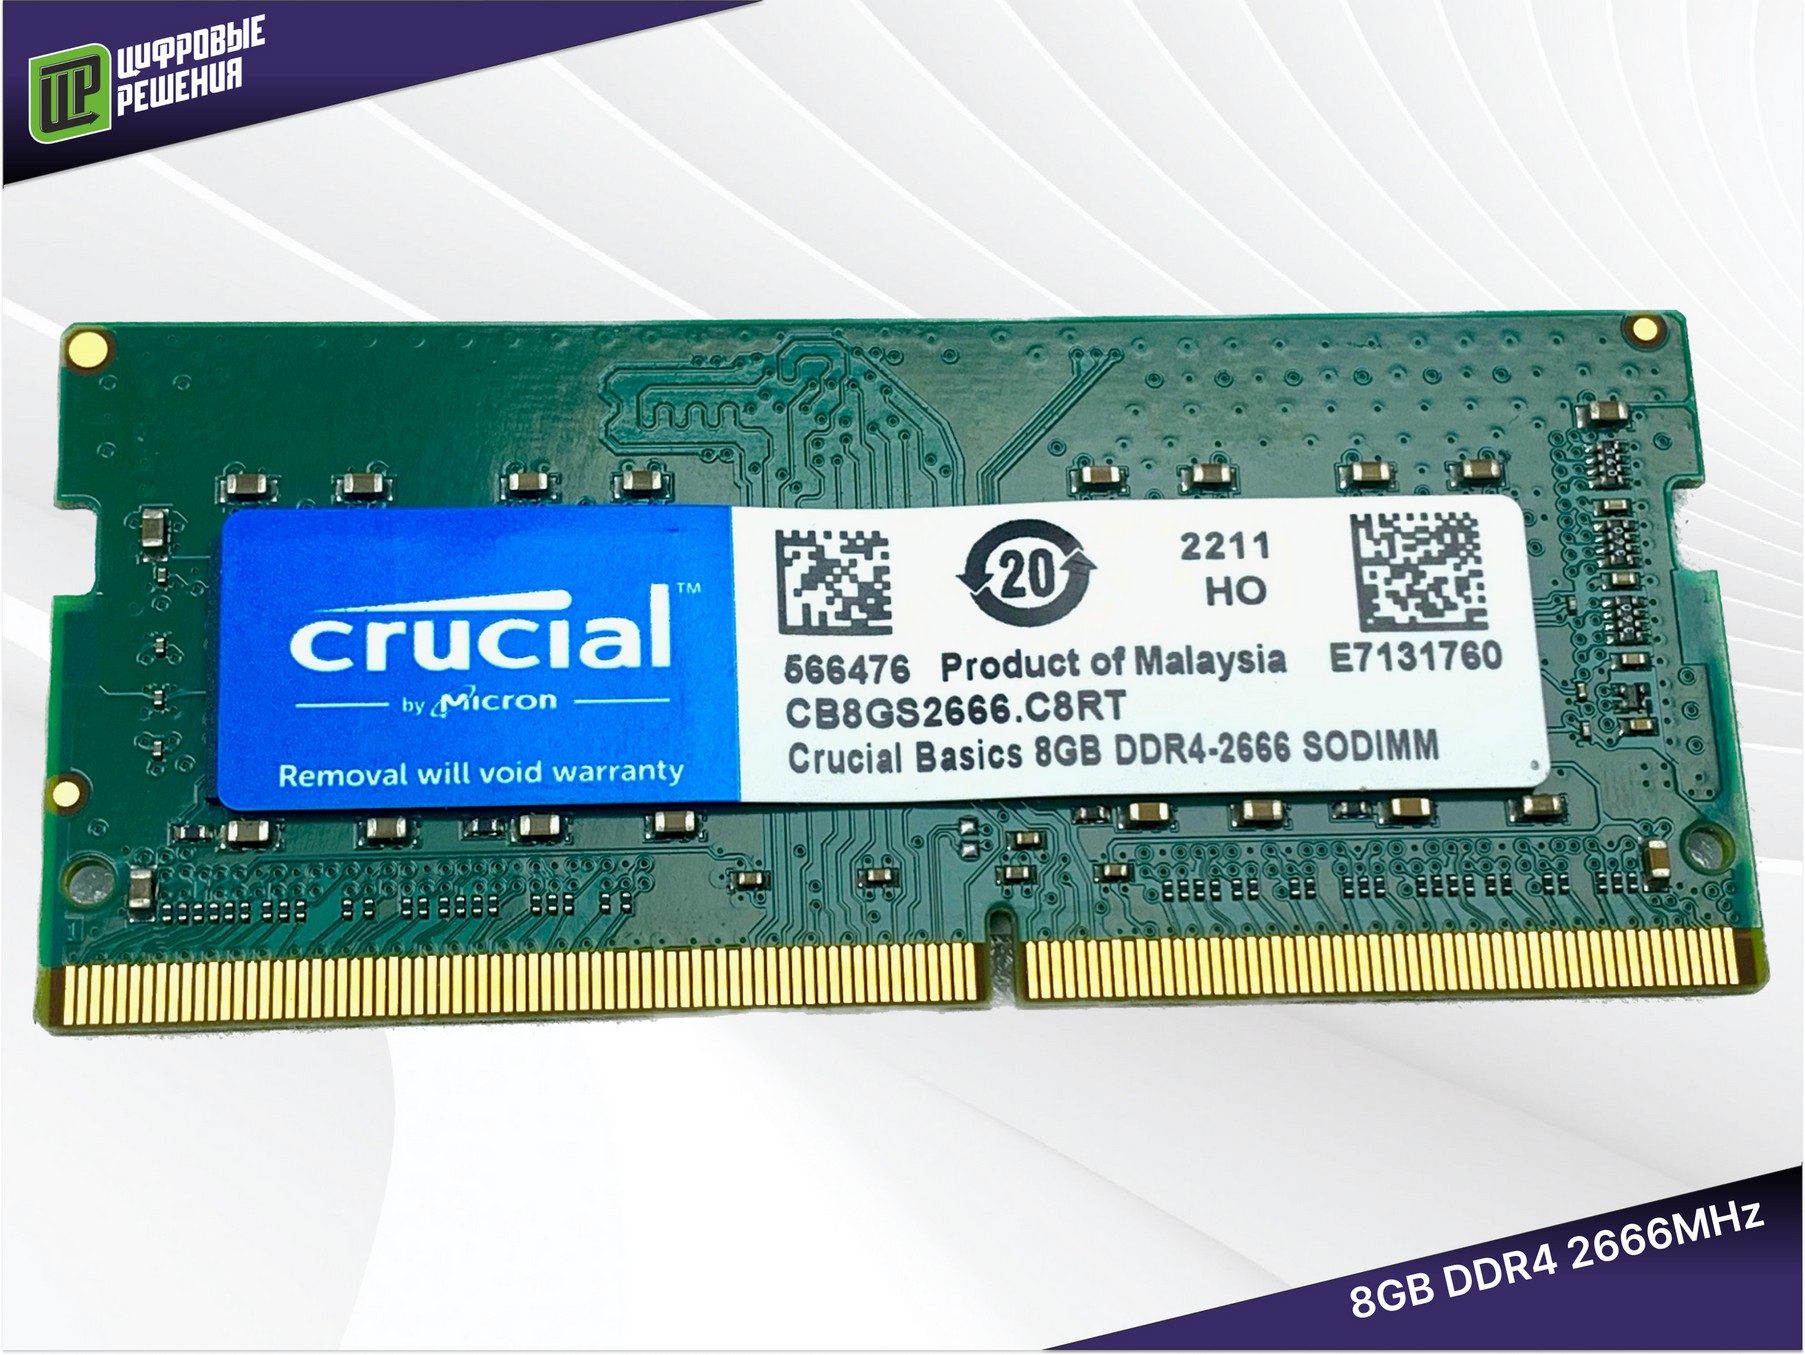 SO-DIMM DDR4 8Gb 2666MHz Crucial